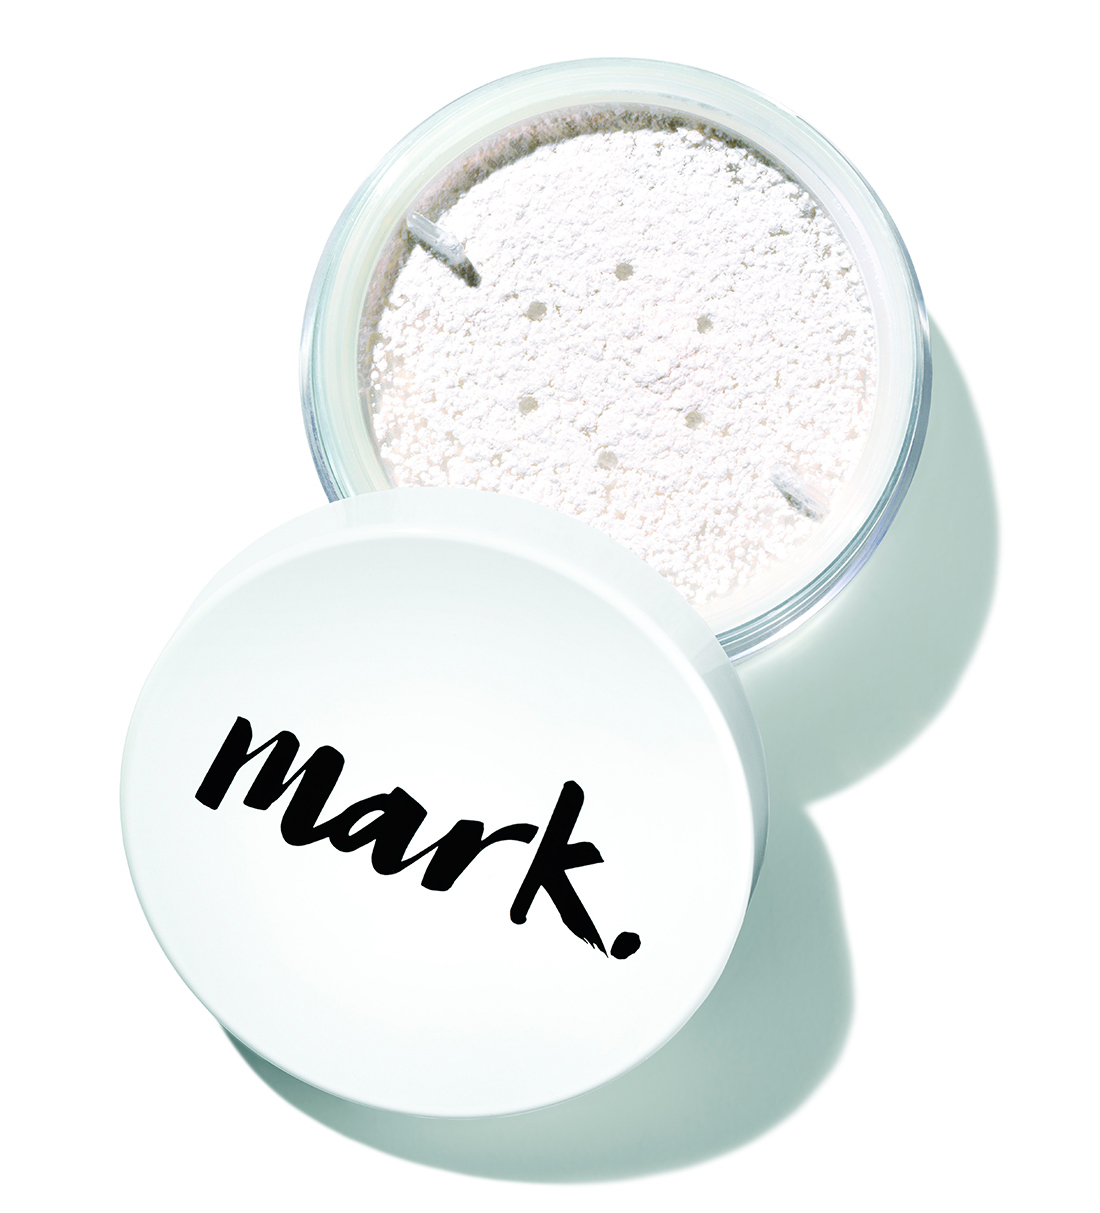 Mark от Avon - новый яркий бренд декоративной косметики